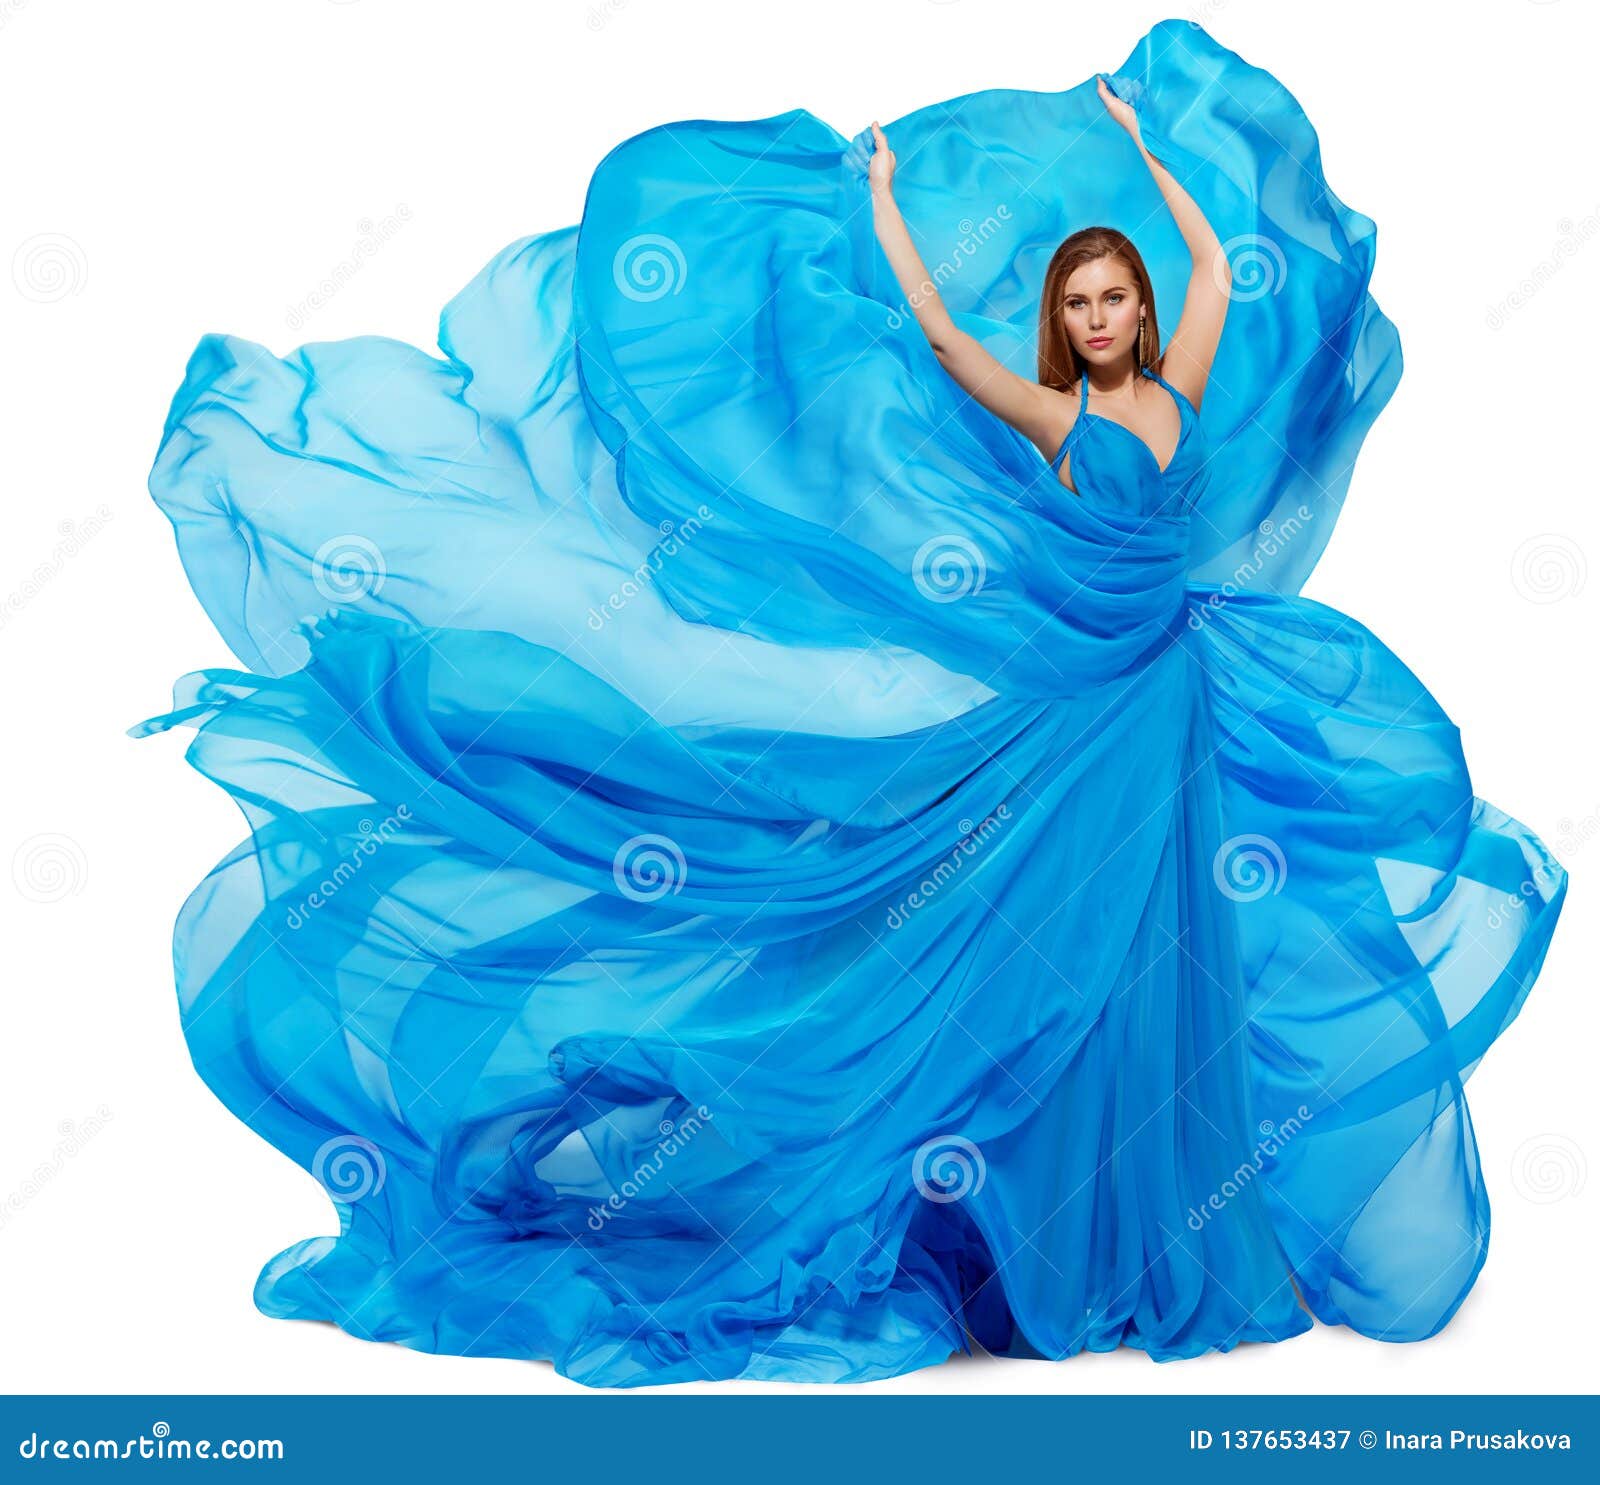 Woman Blue Dress, Fashion Model Dancing in Long Waving Gown, Fabric ...